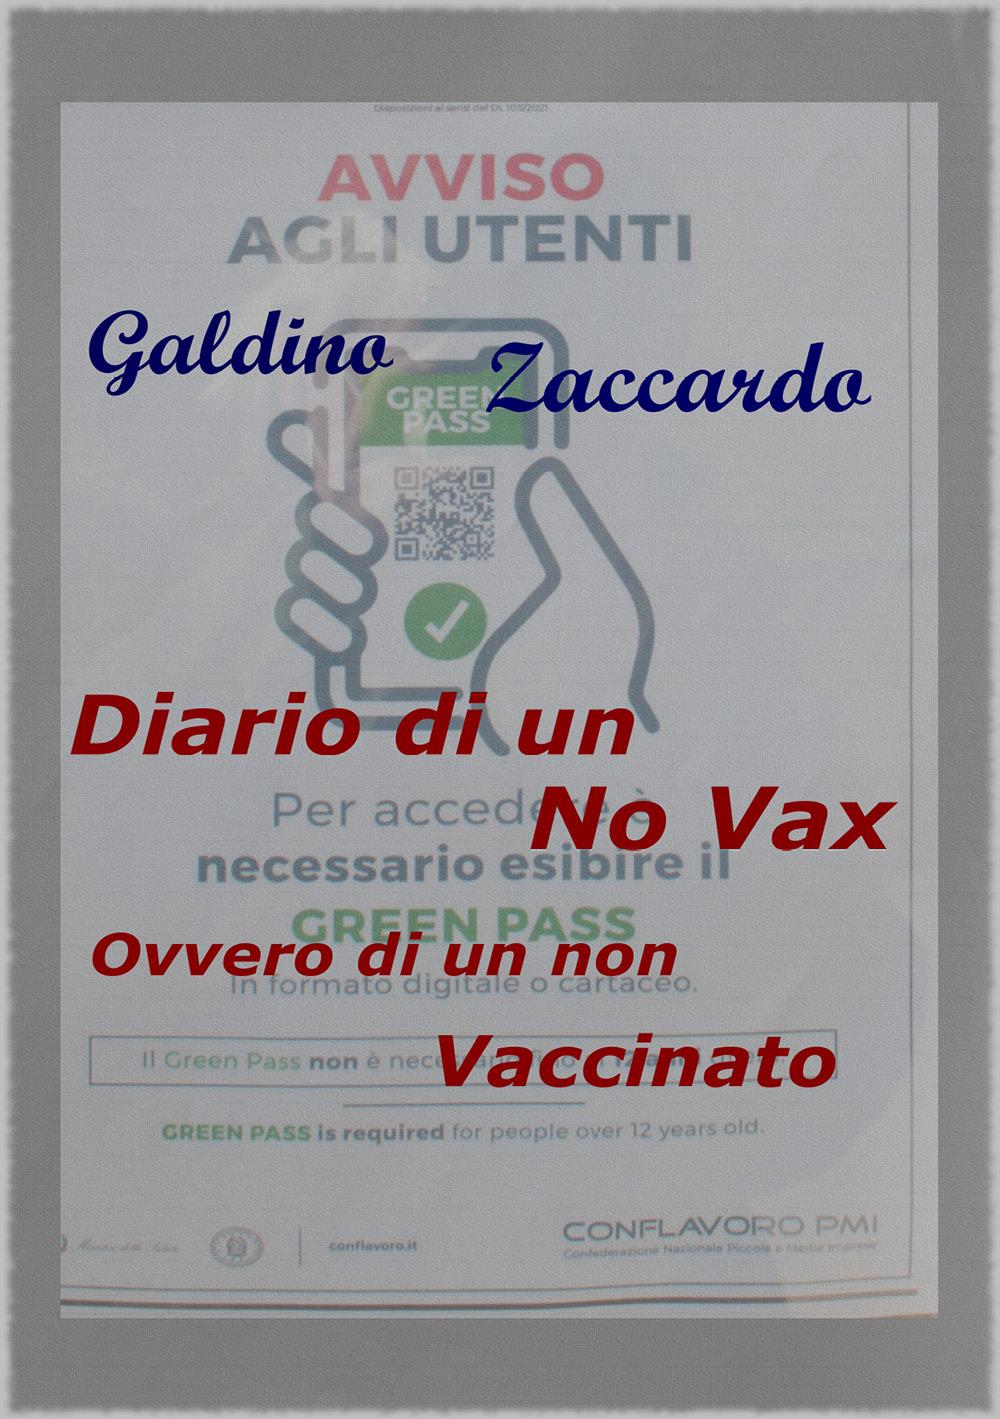 Diario di un Novax, ovvero di un non vaccinato